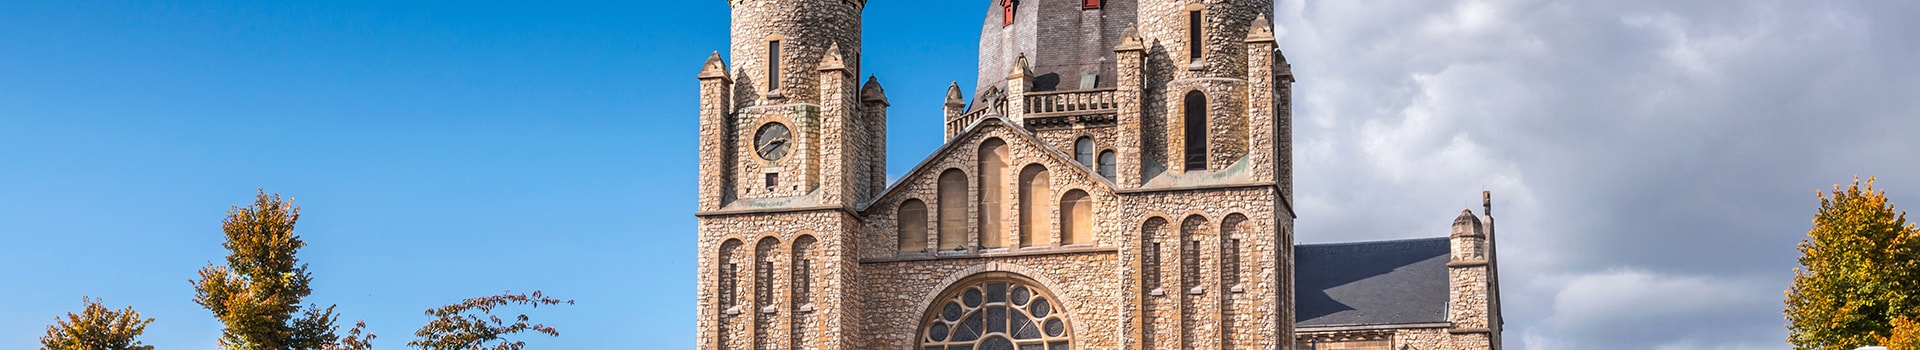 Avignon - Caumont - Maastricht aachen